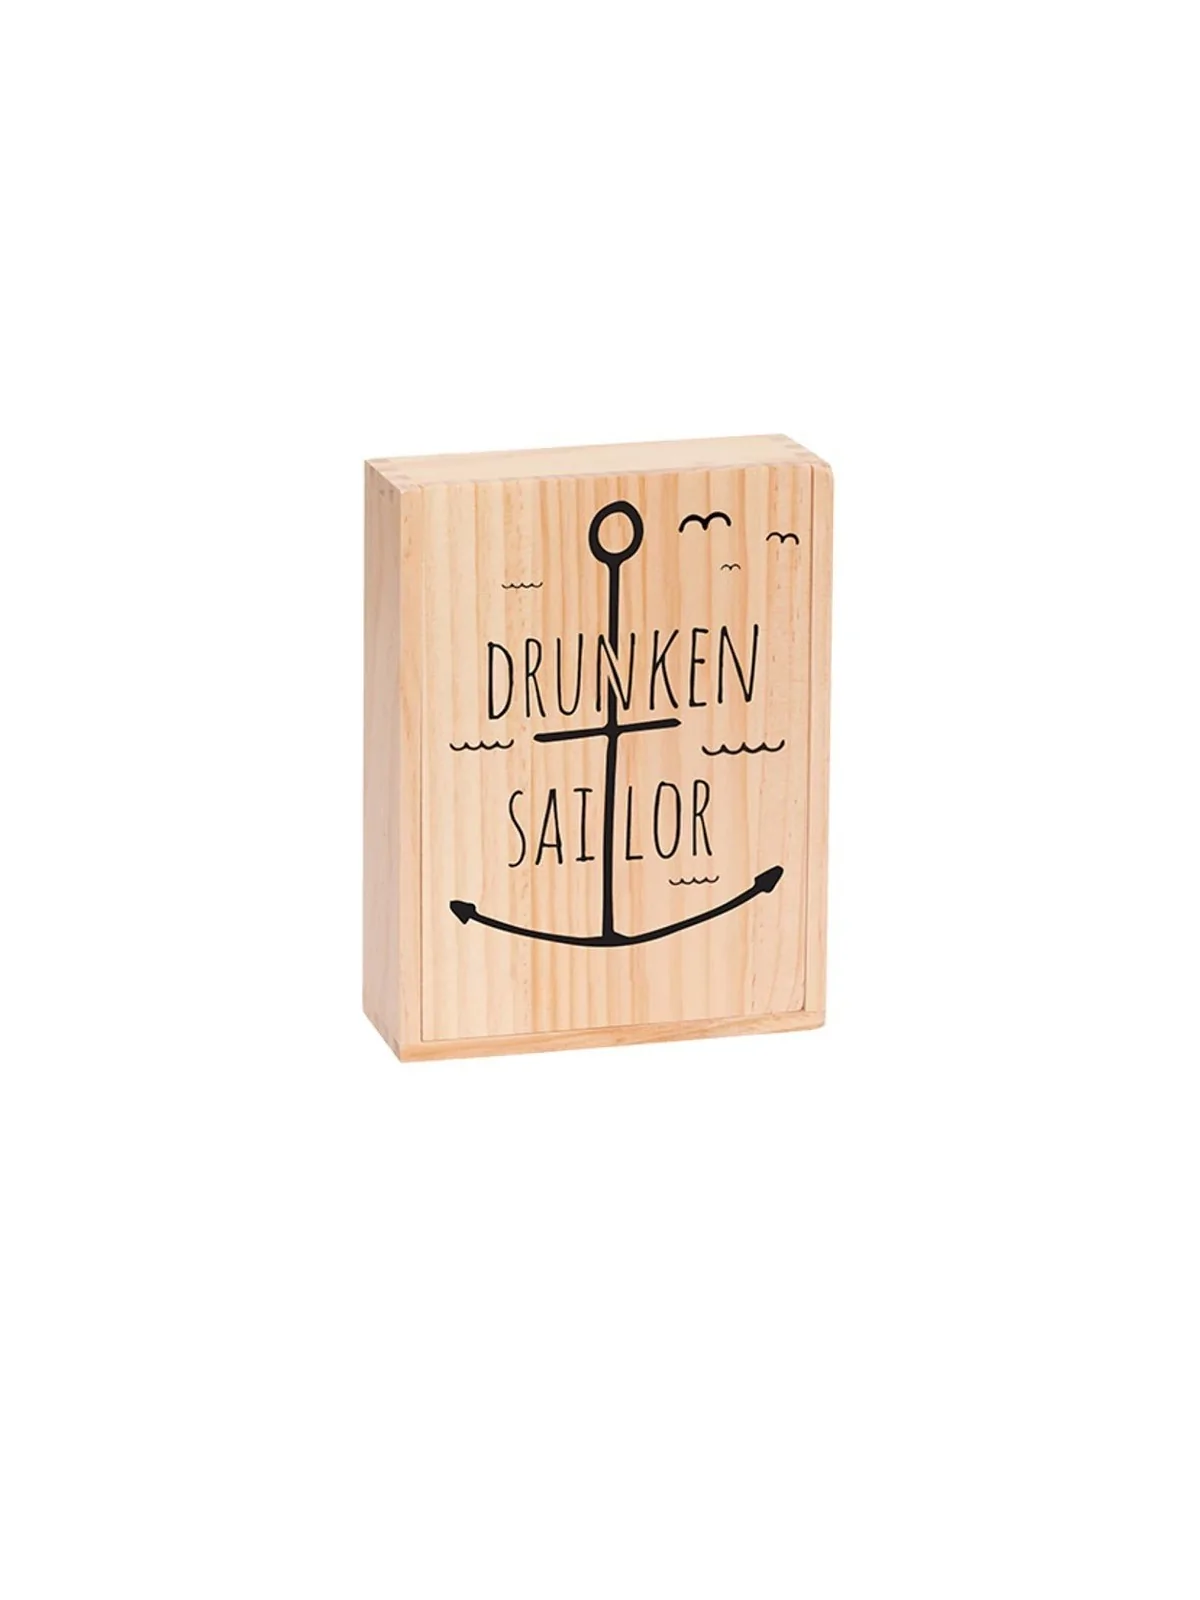 Comprar Drunken Sailor barato al mejor precio 26,99 € de Marektoys